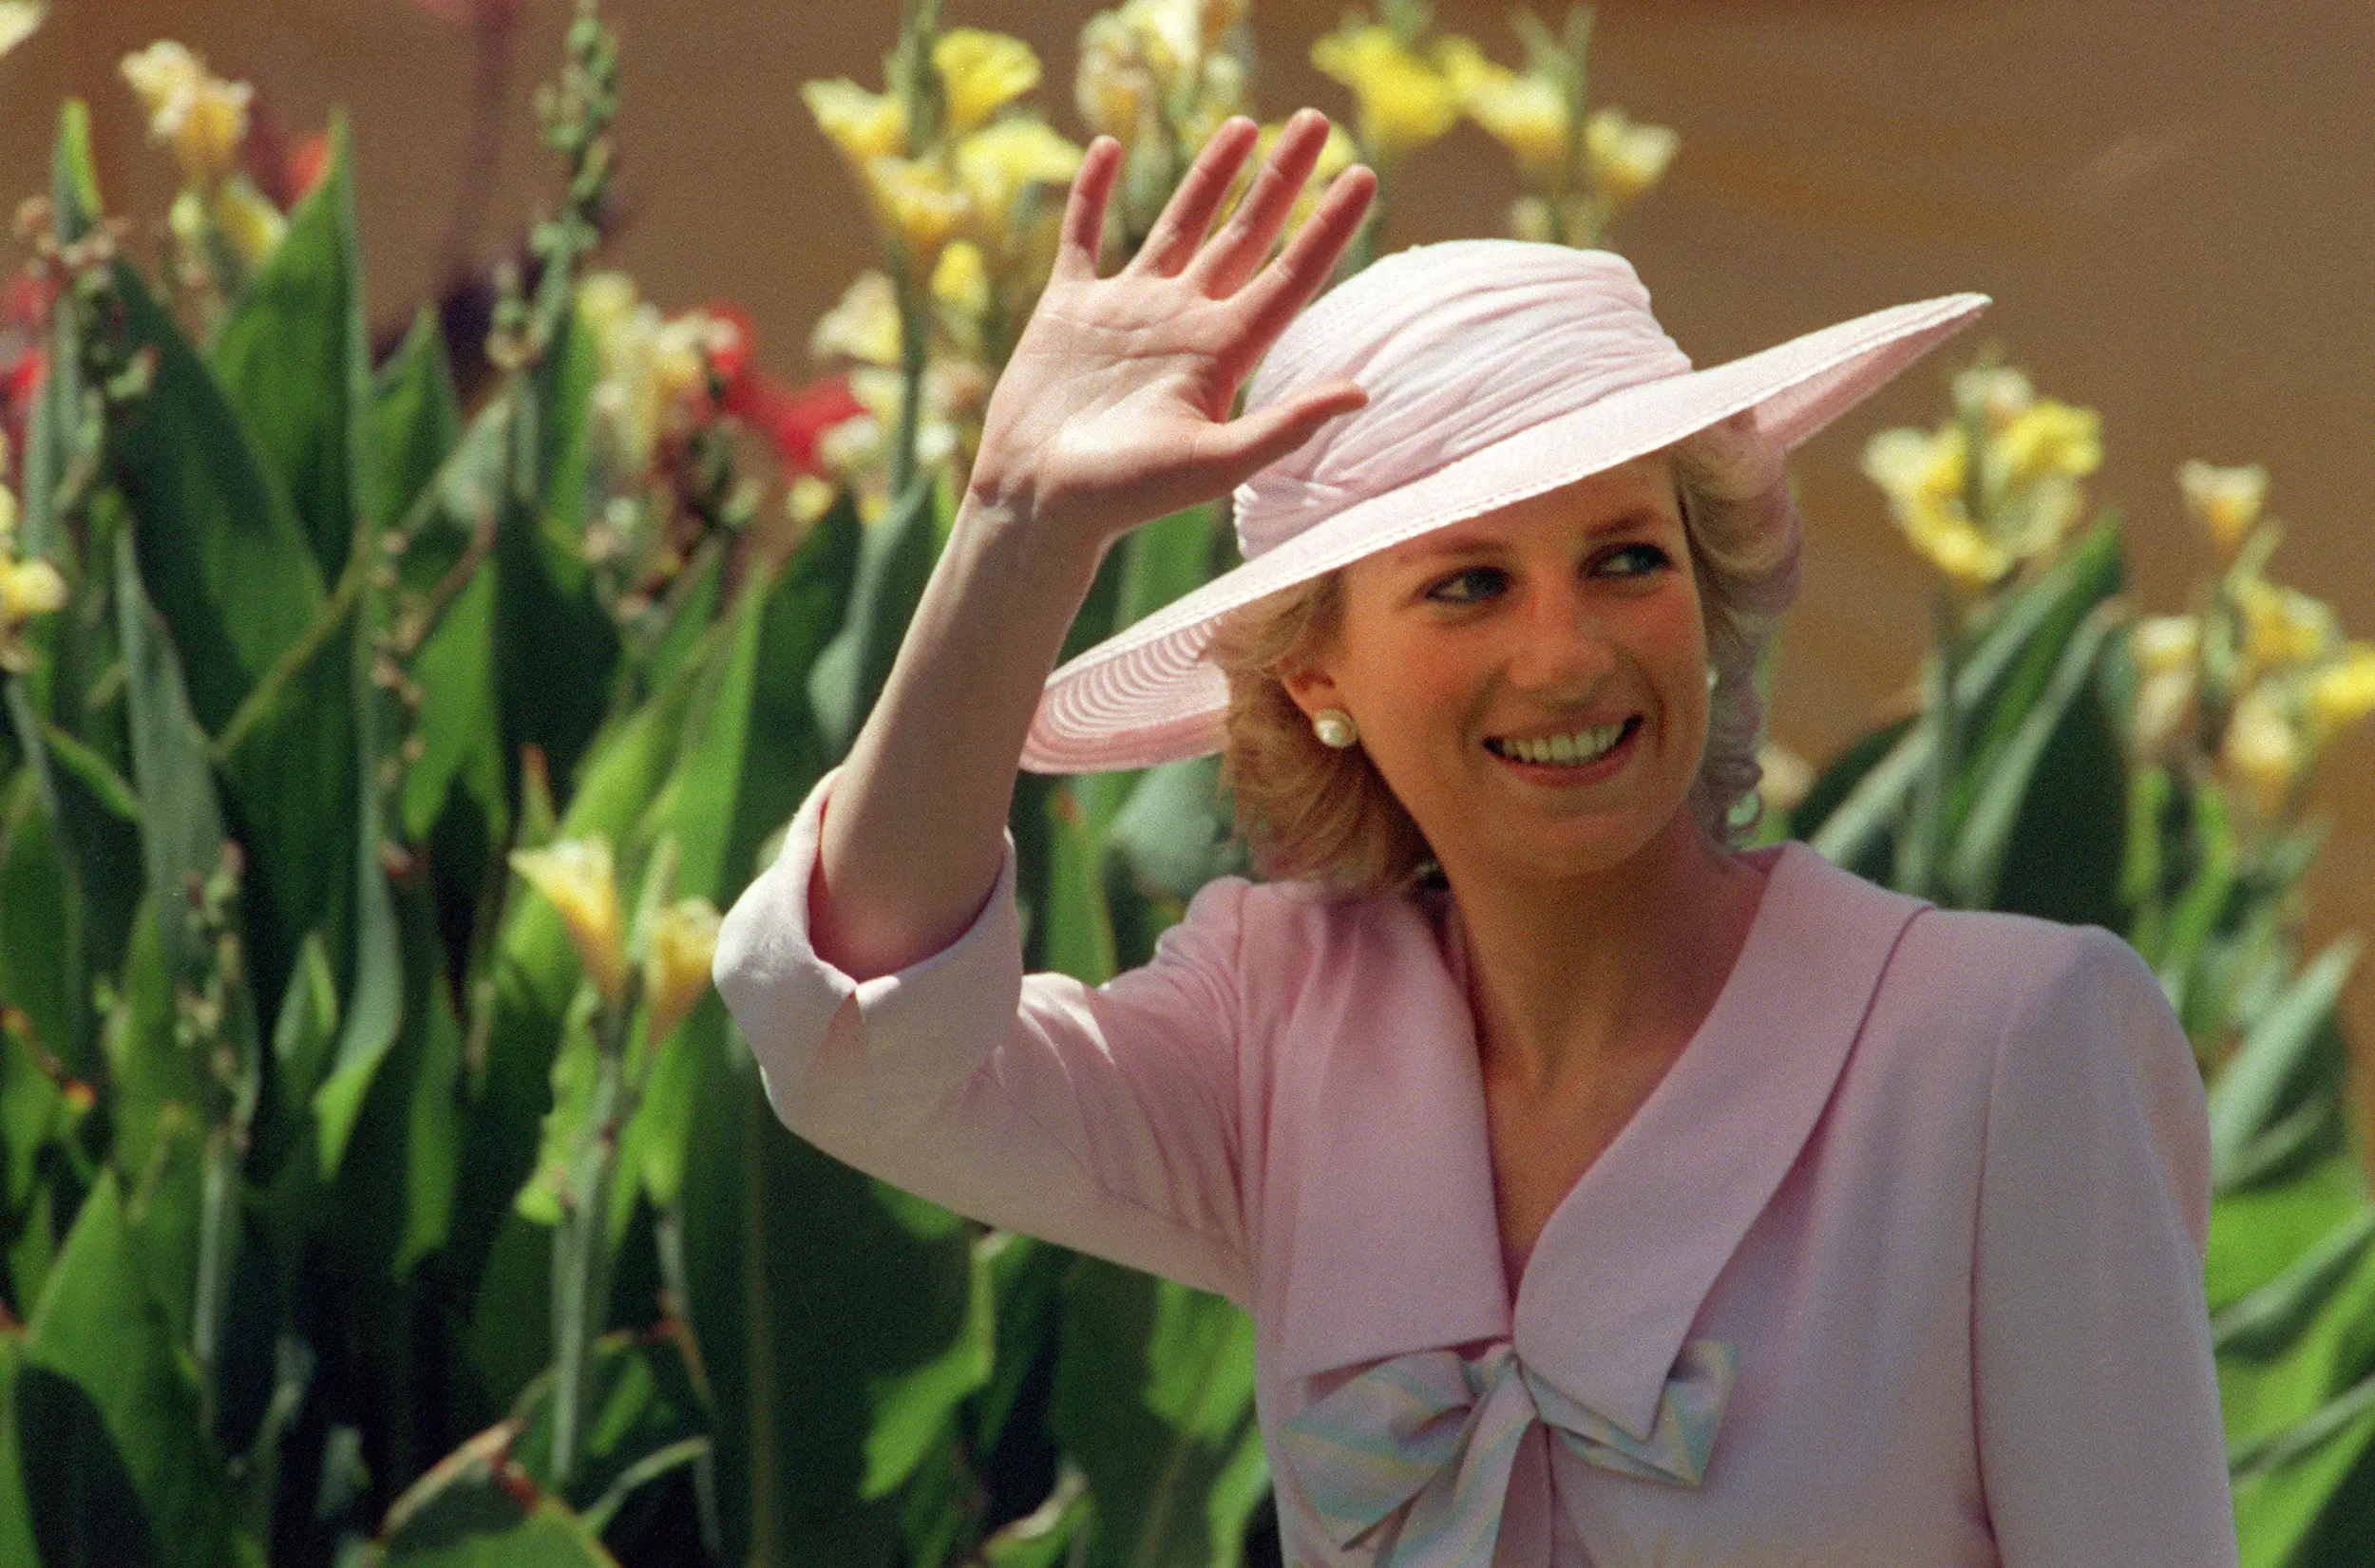 Meski sudah meninggal, Putri Diana masih menjadi panutan banyak orang karena dirinya memiliki kharisma sebagai seorang putri di era modern. (AFP/Bintang.com)